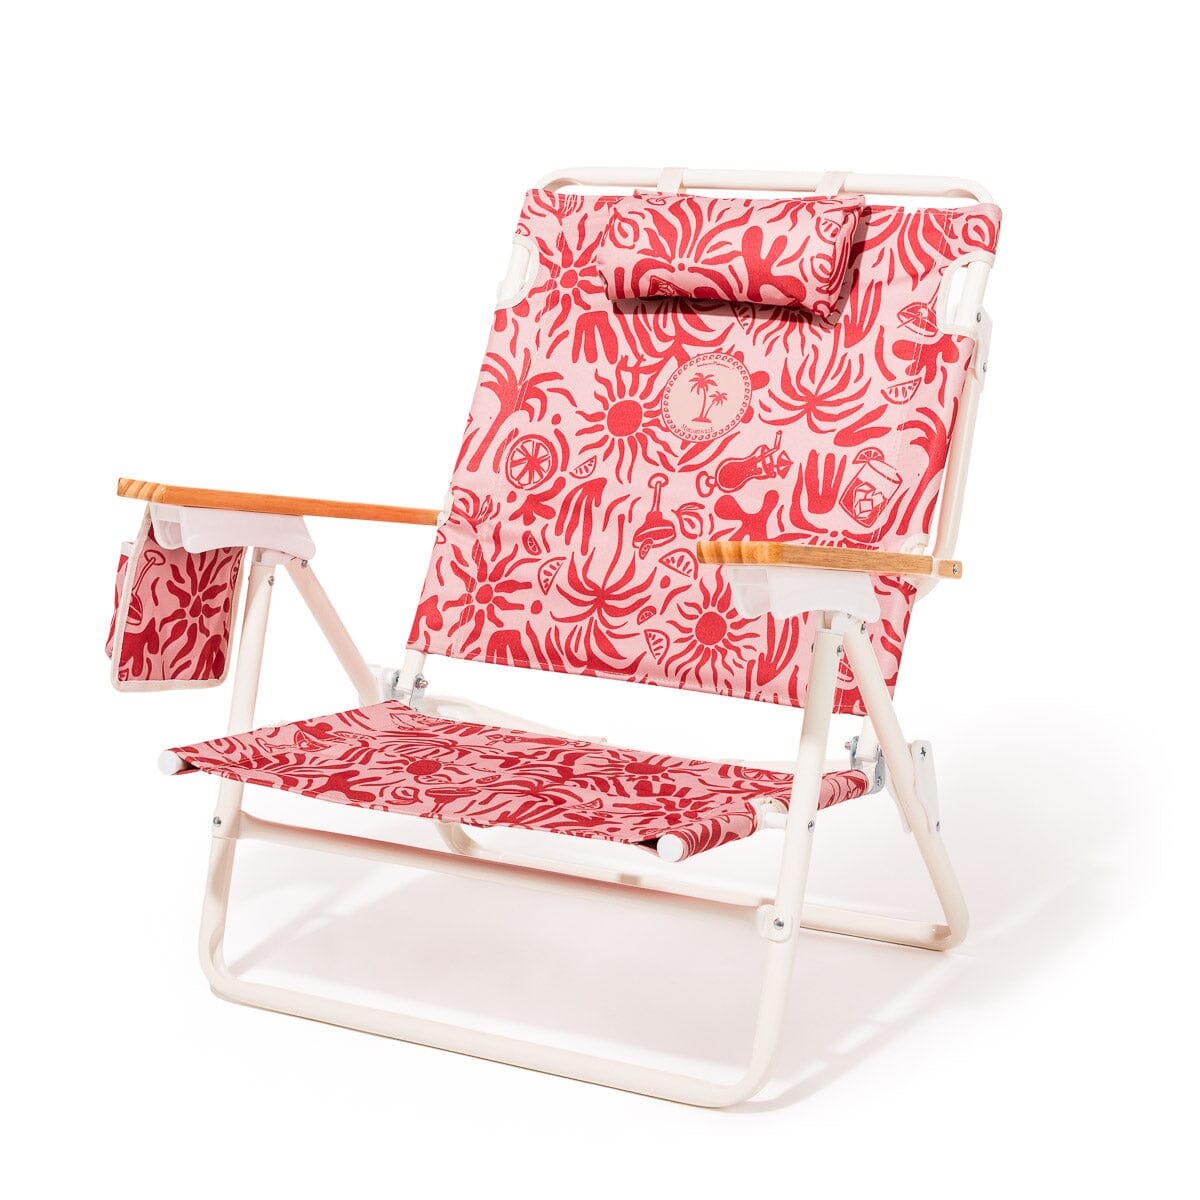 The Mañana Chair - Strawberry Daiquiri Tiki Mañana Beach Chair Margaritaville by B&P Co. 